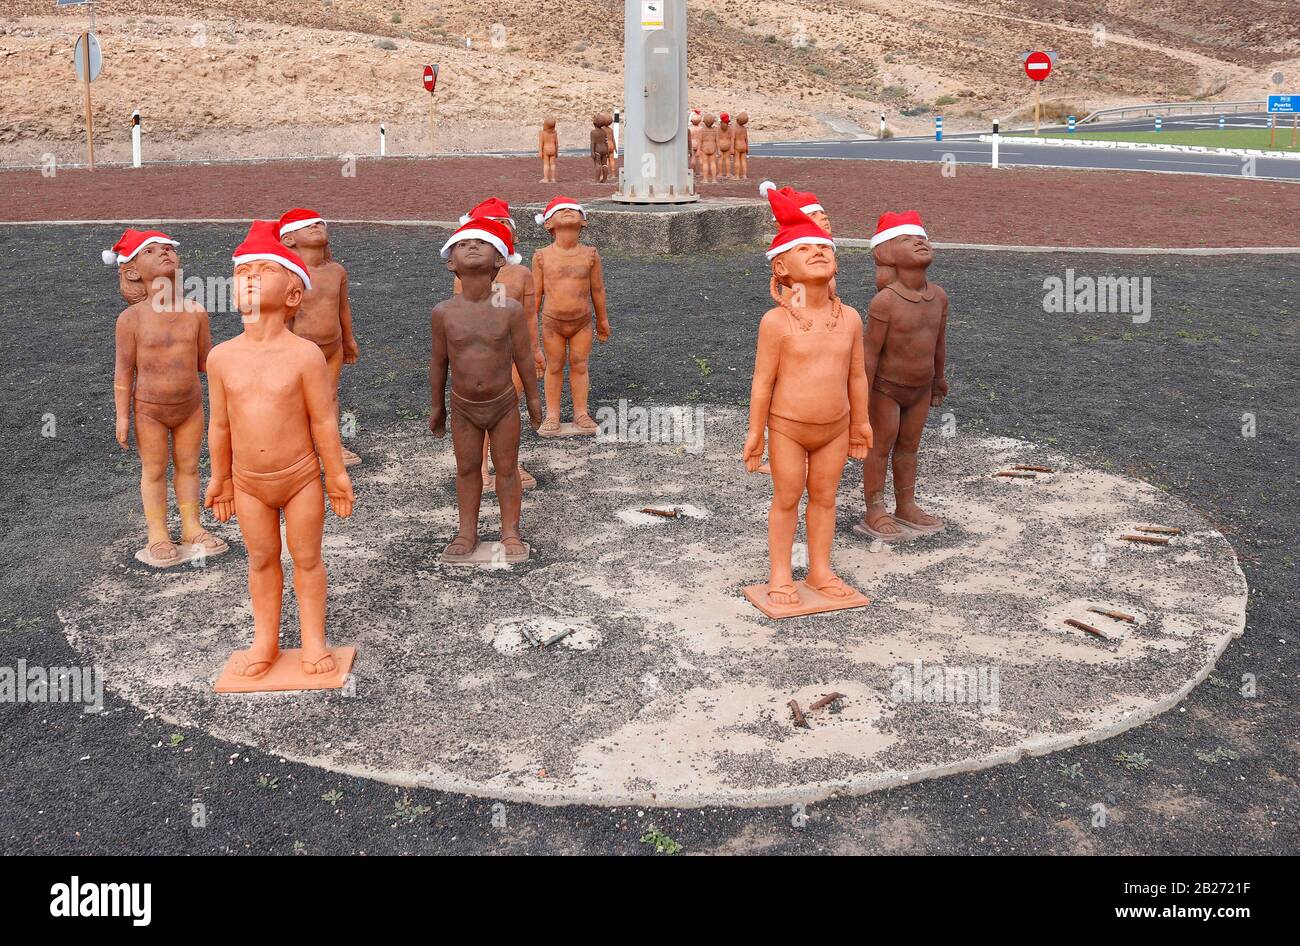 Impressionen: die Skulpturen-Installation "Caminos' von Lisbet Fernandez Ramos, Morro Jable Fuerteventura Isole Kanarische, Spanien/ Fuerteventura, Foto Stock